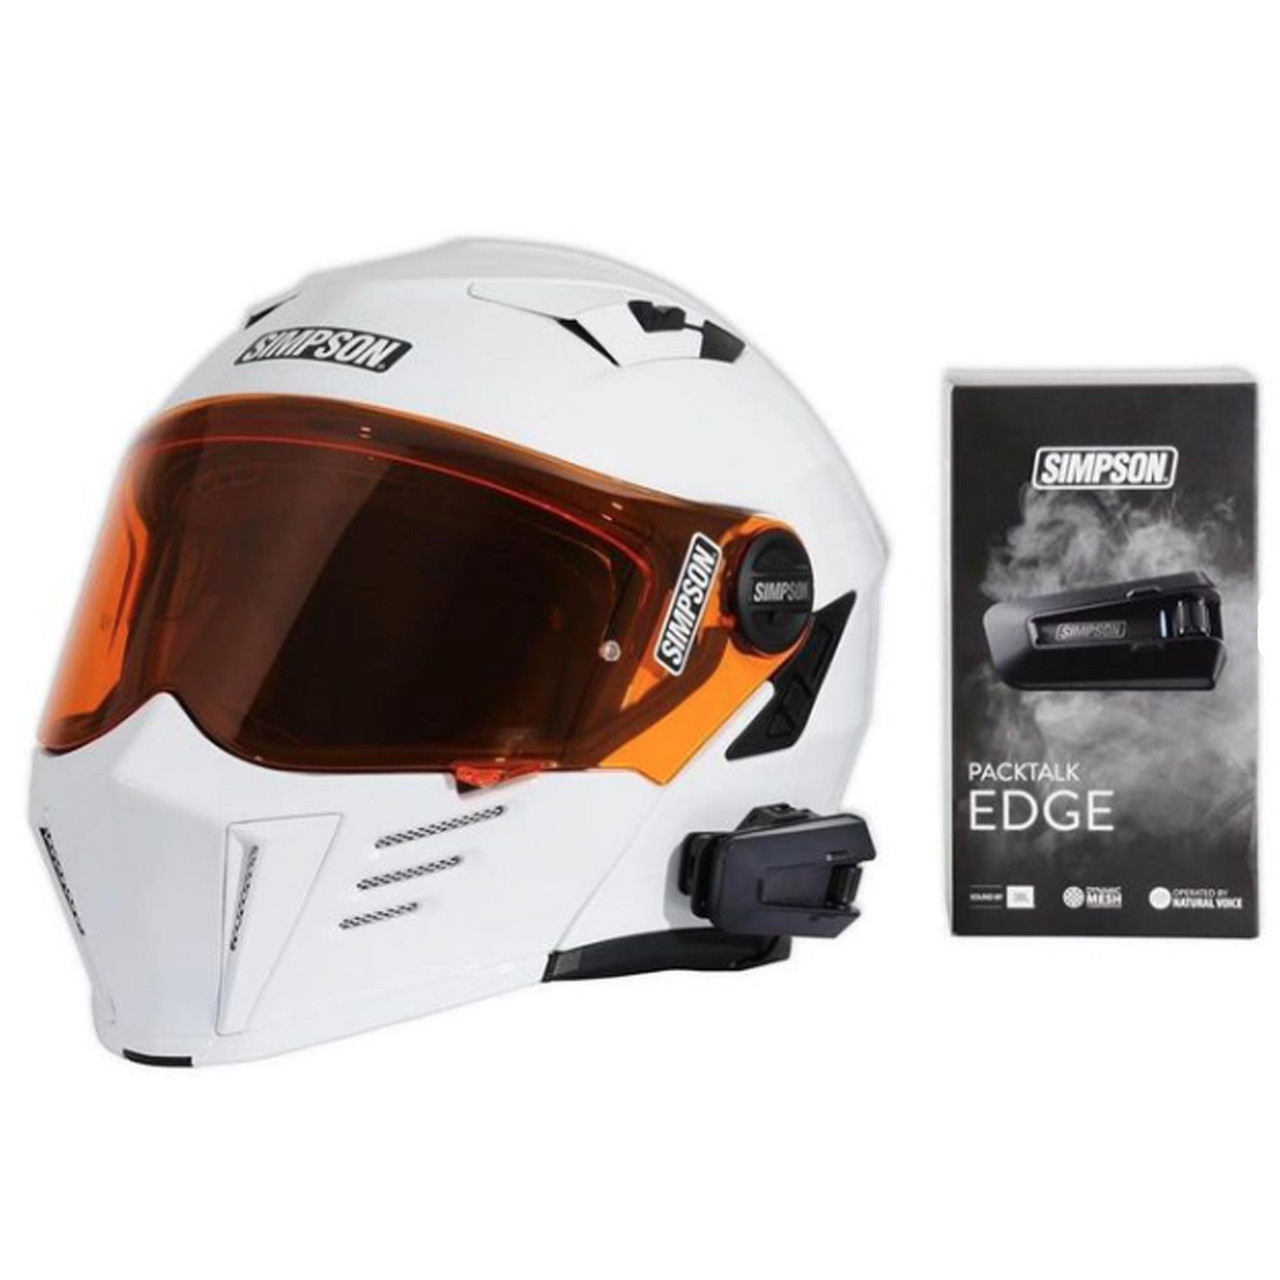 Cardo Packtalk Edge - Helmet House